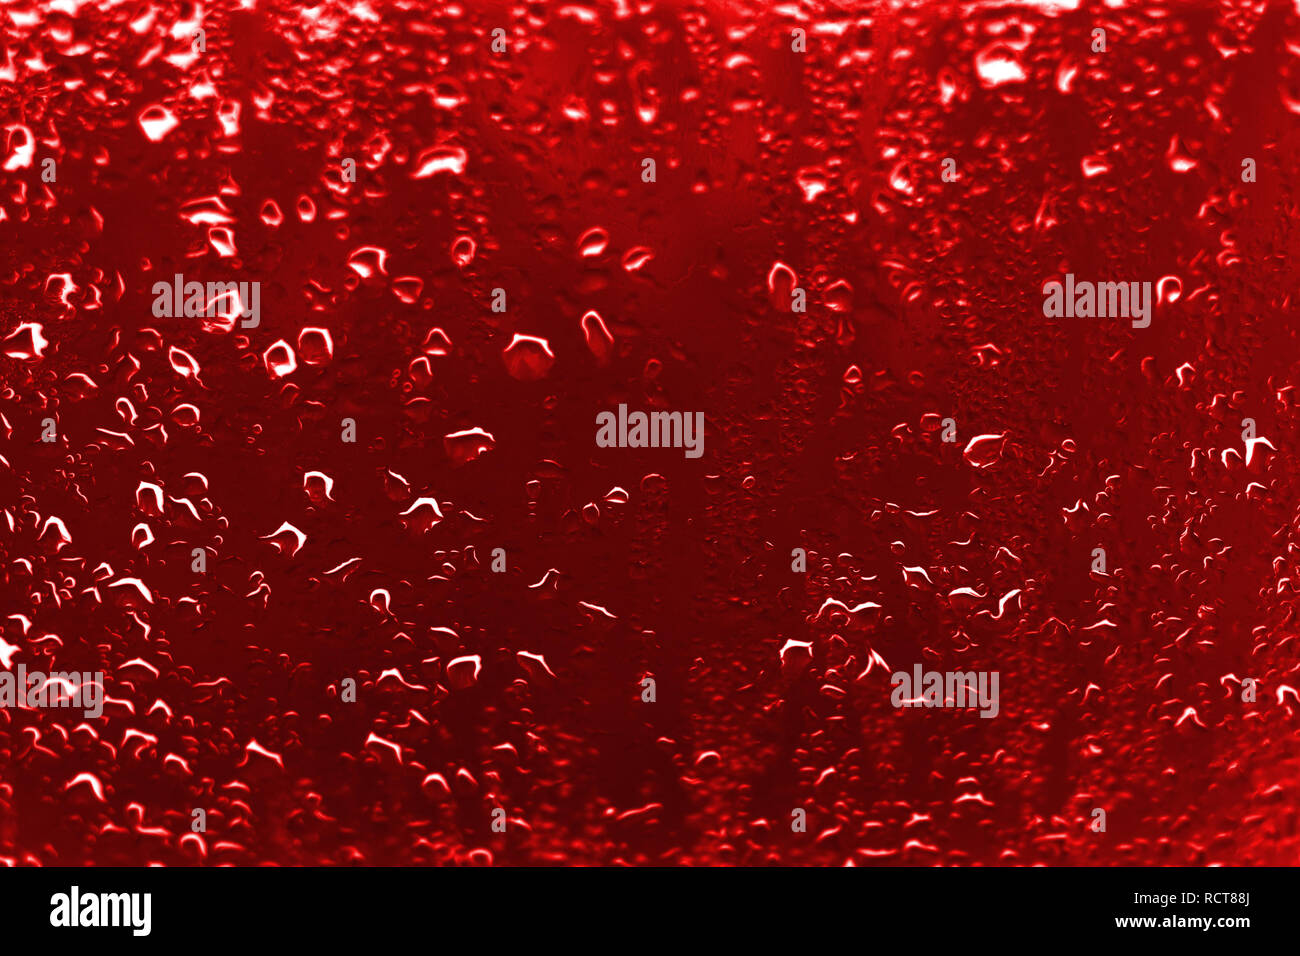 Hoher Kontrast Foto von Regentropfen auf einem Fenster Glas mit leuchtend roter scharlachrote Farbe Stockfoto